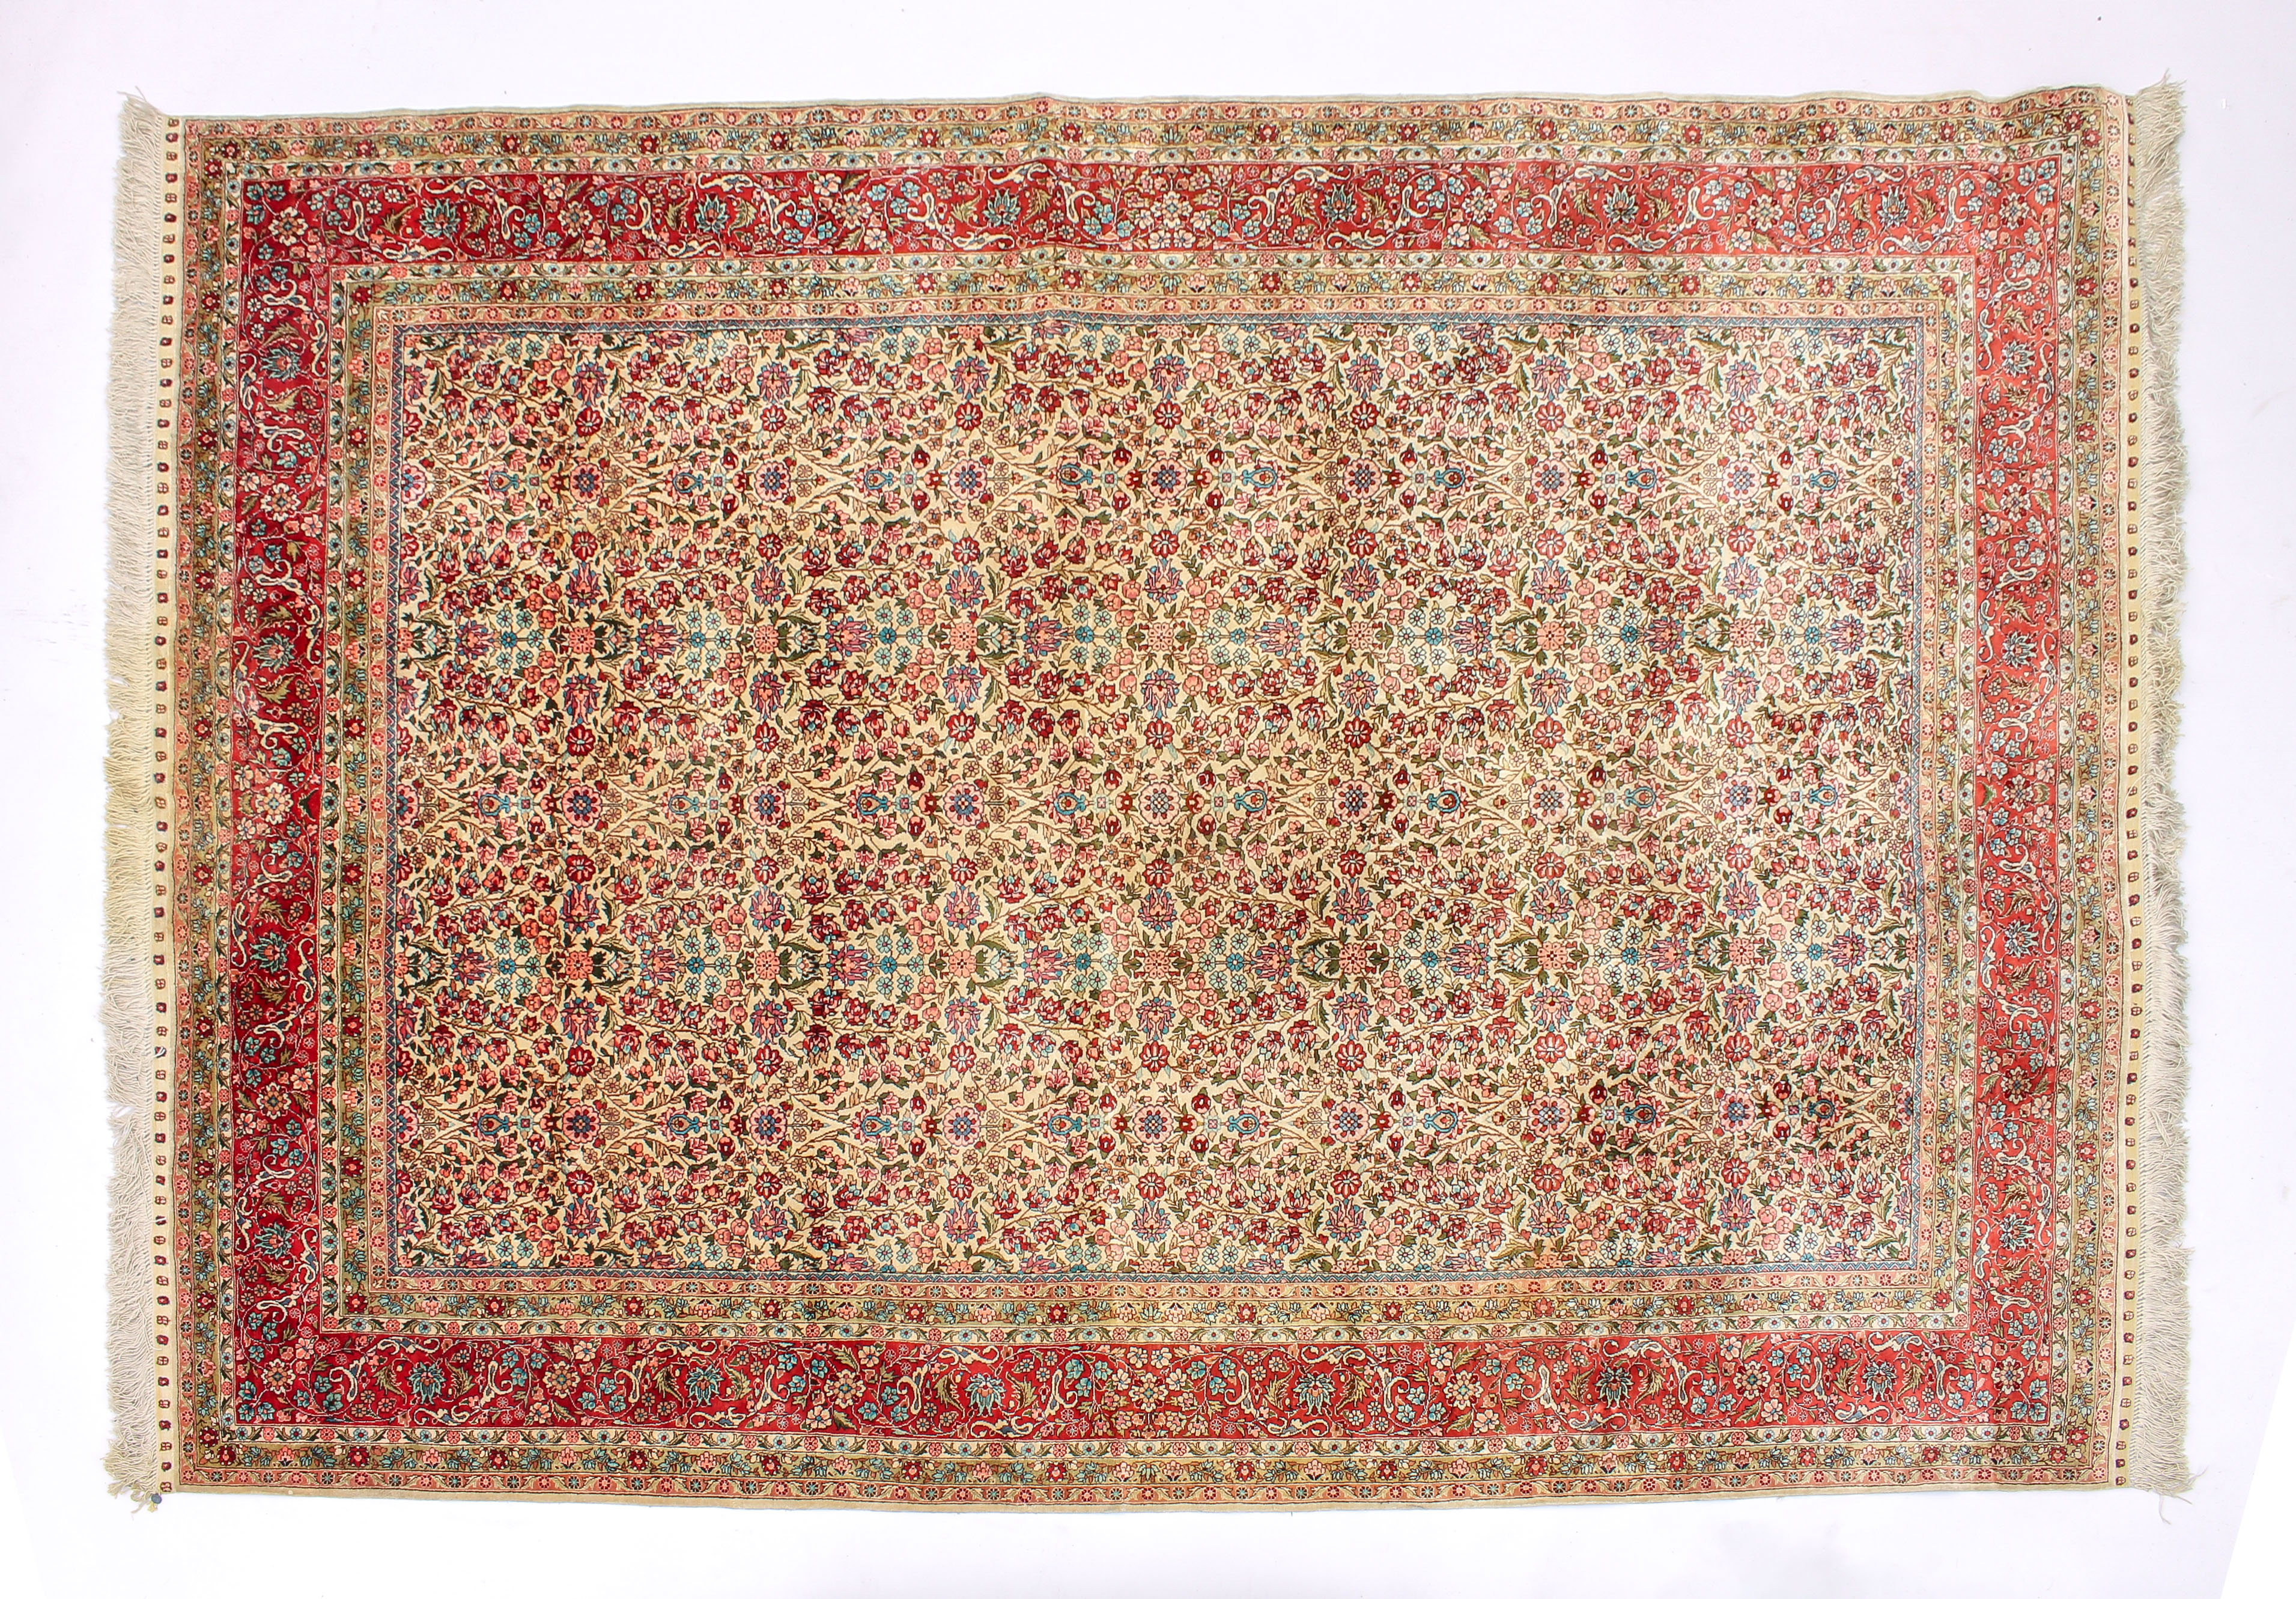 A silk rug, 208 (excluding fringe) x 139 cm